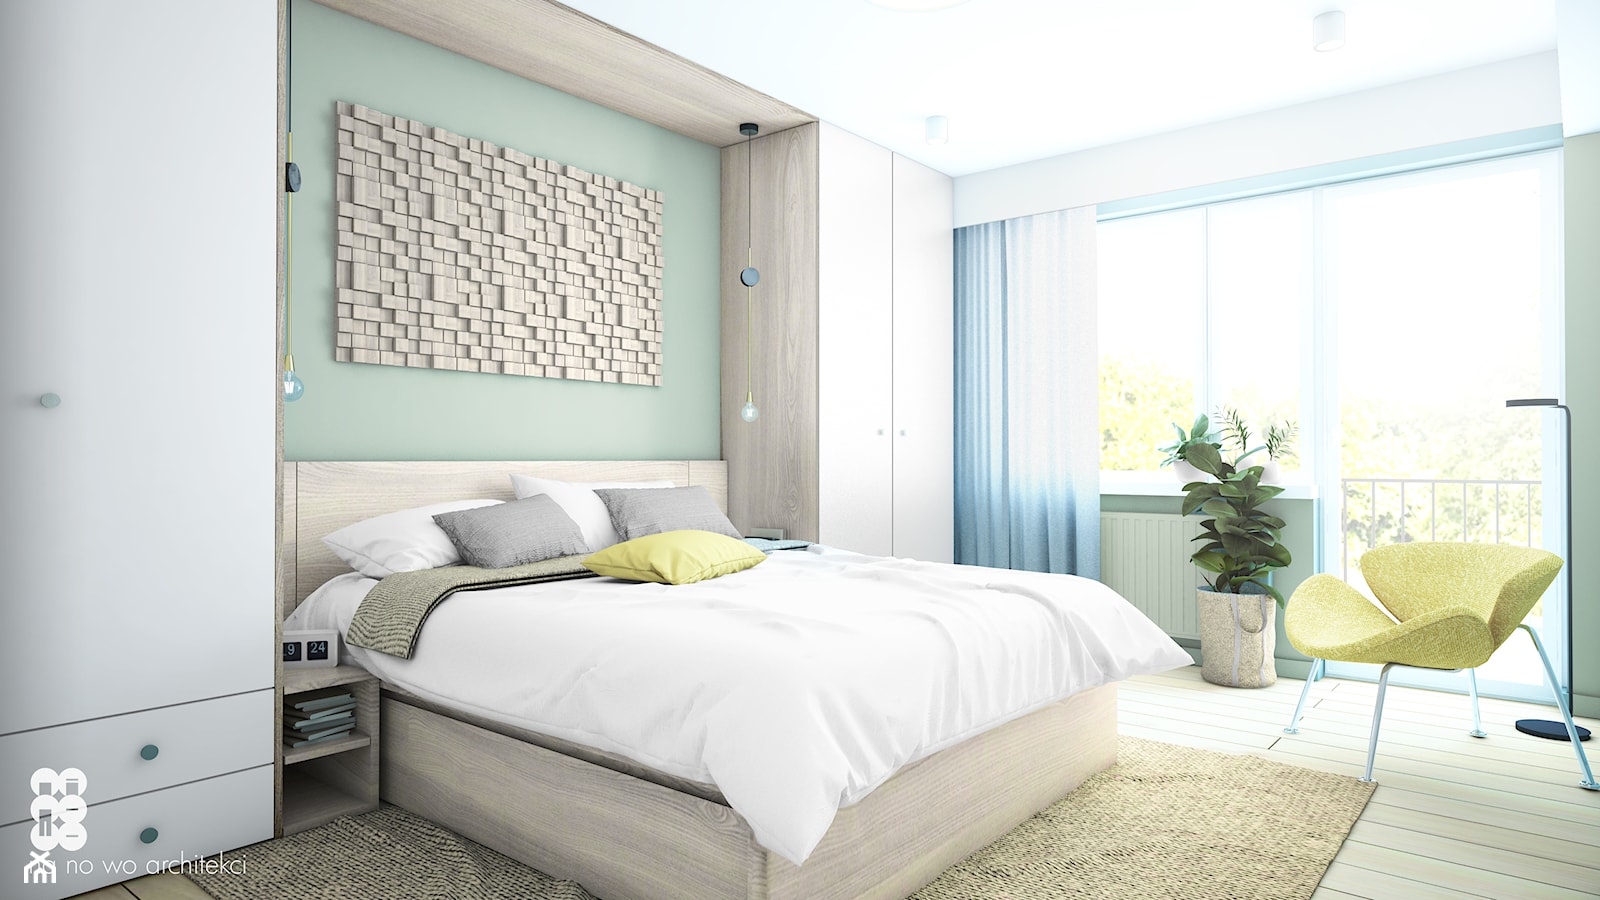 WNĘTRZA TYRMANDA - Średnia biała zielona sypialnia z balkonem / tarasem, styl minimalistyczny - zdjęcie od NA NO WO ARCHITEKCI - Homebook